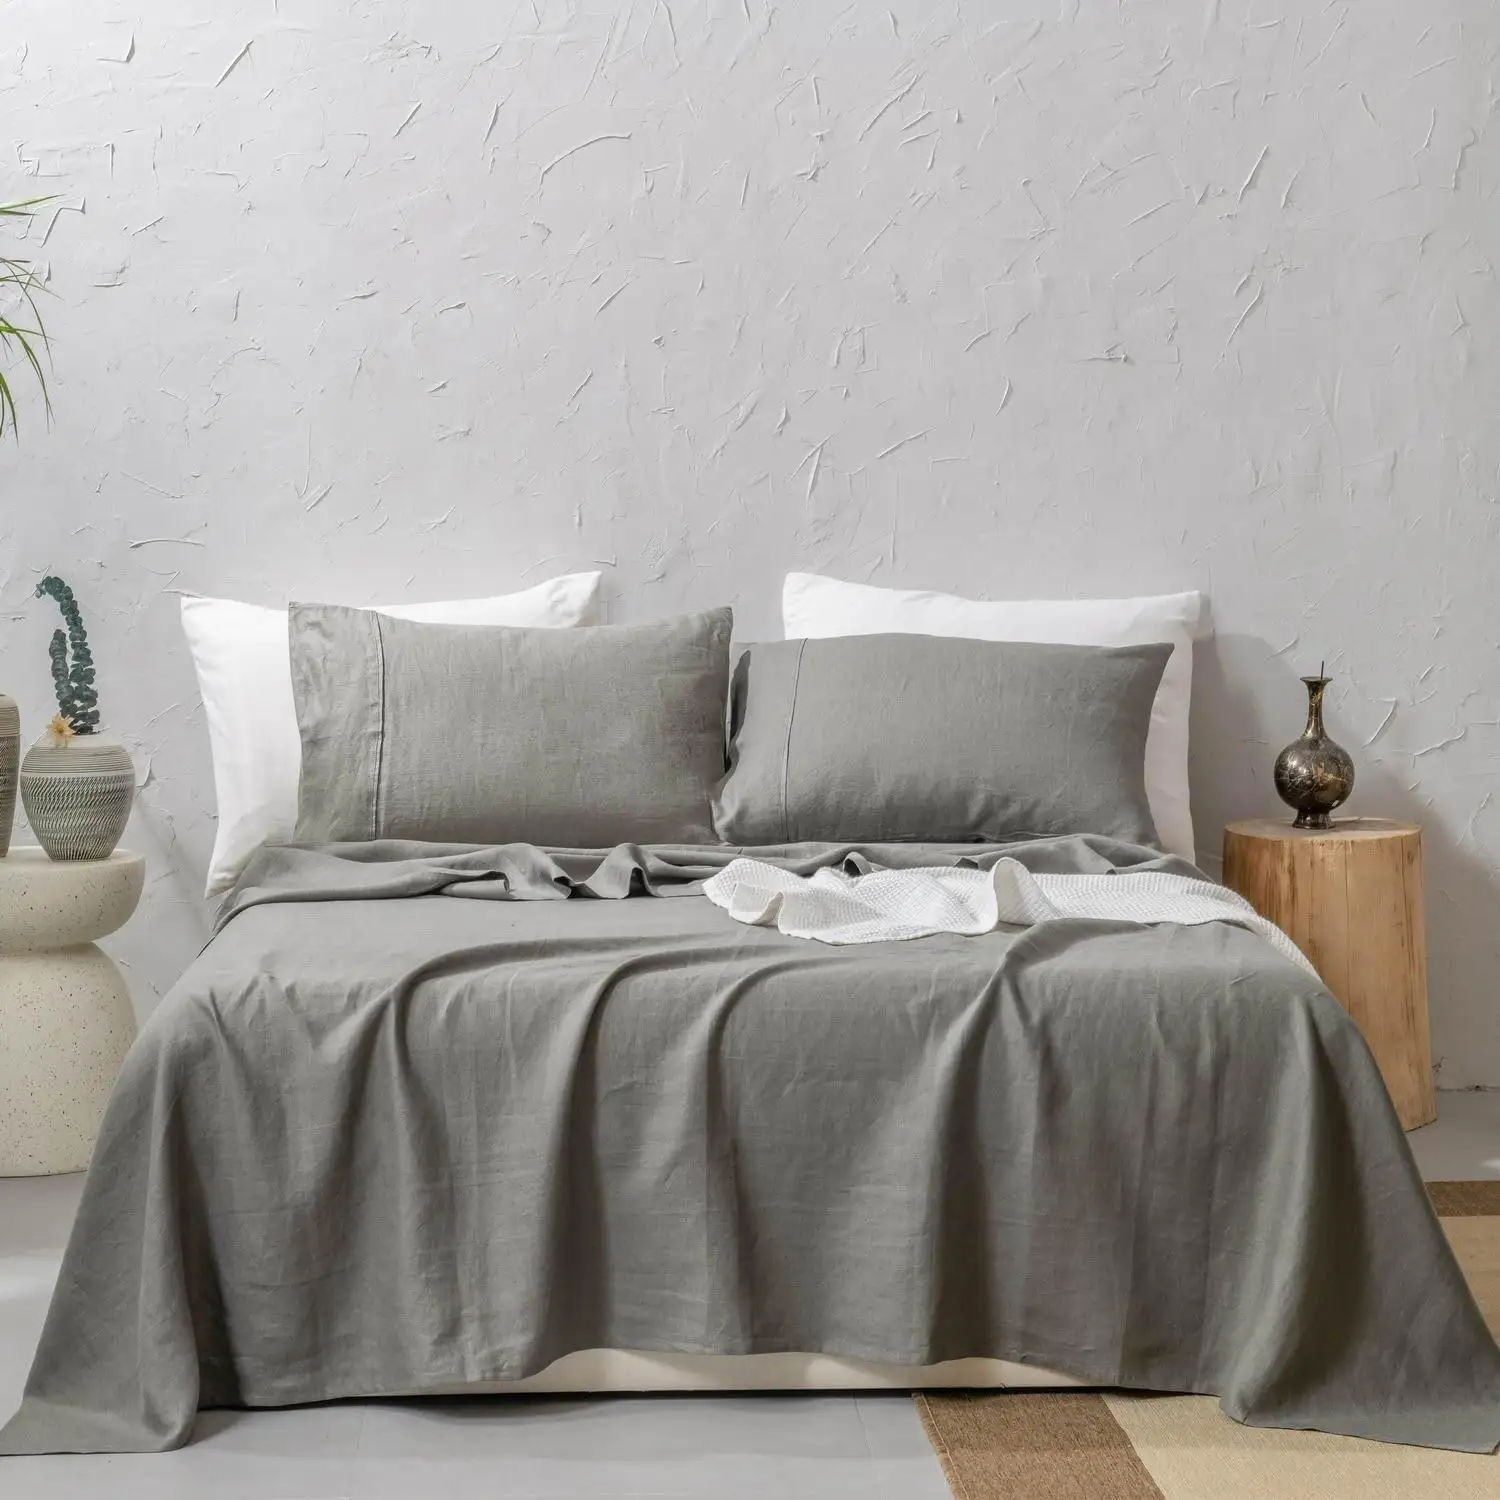 مجموعة ملاءات السرير المكونة من 4 قطع وبها بطانية فائقة النعومة وسهلة العناية بها بأرخص سعر للبيع بالجملة